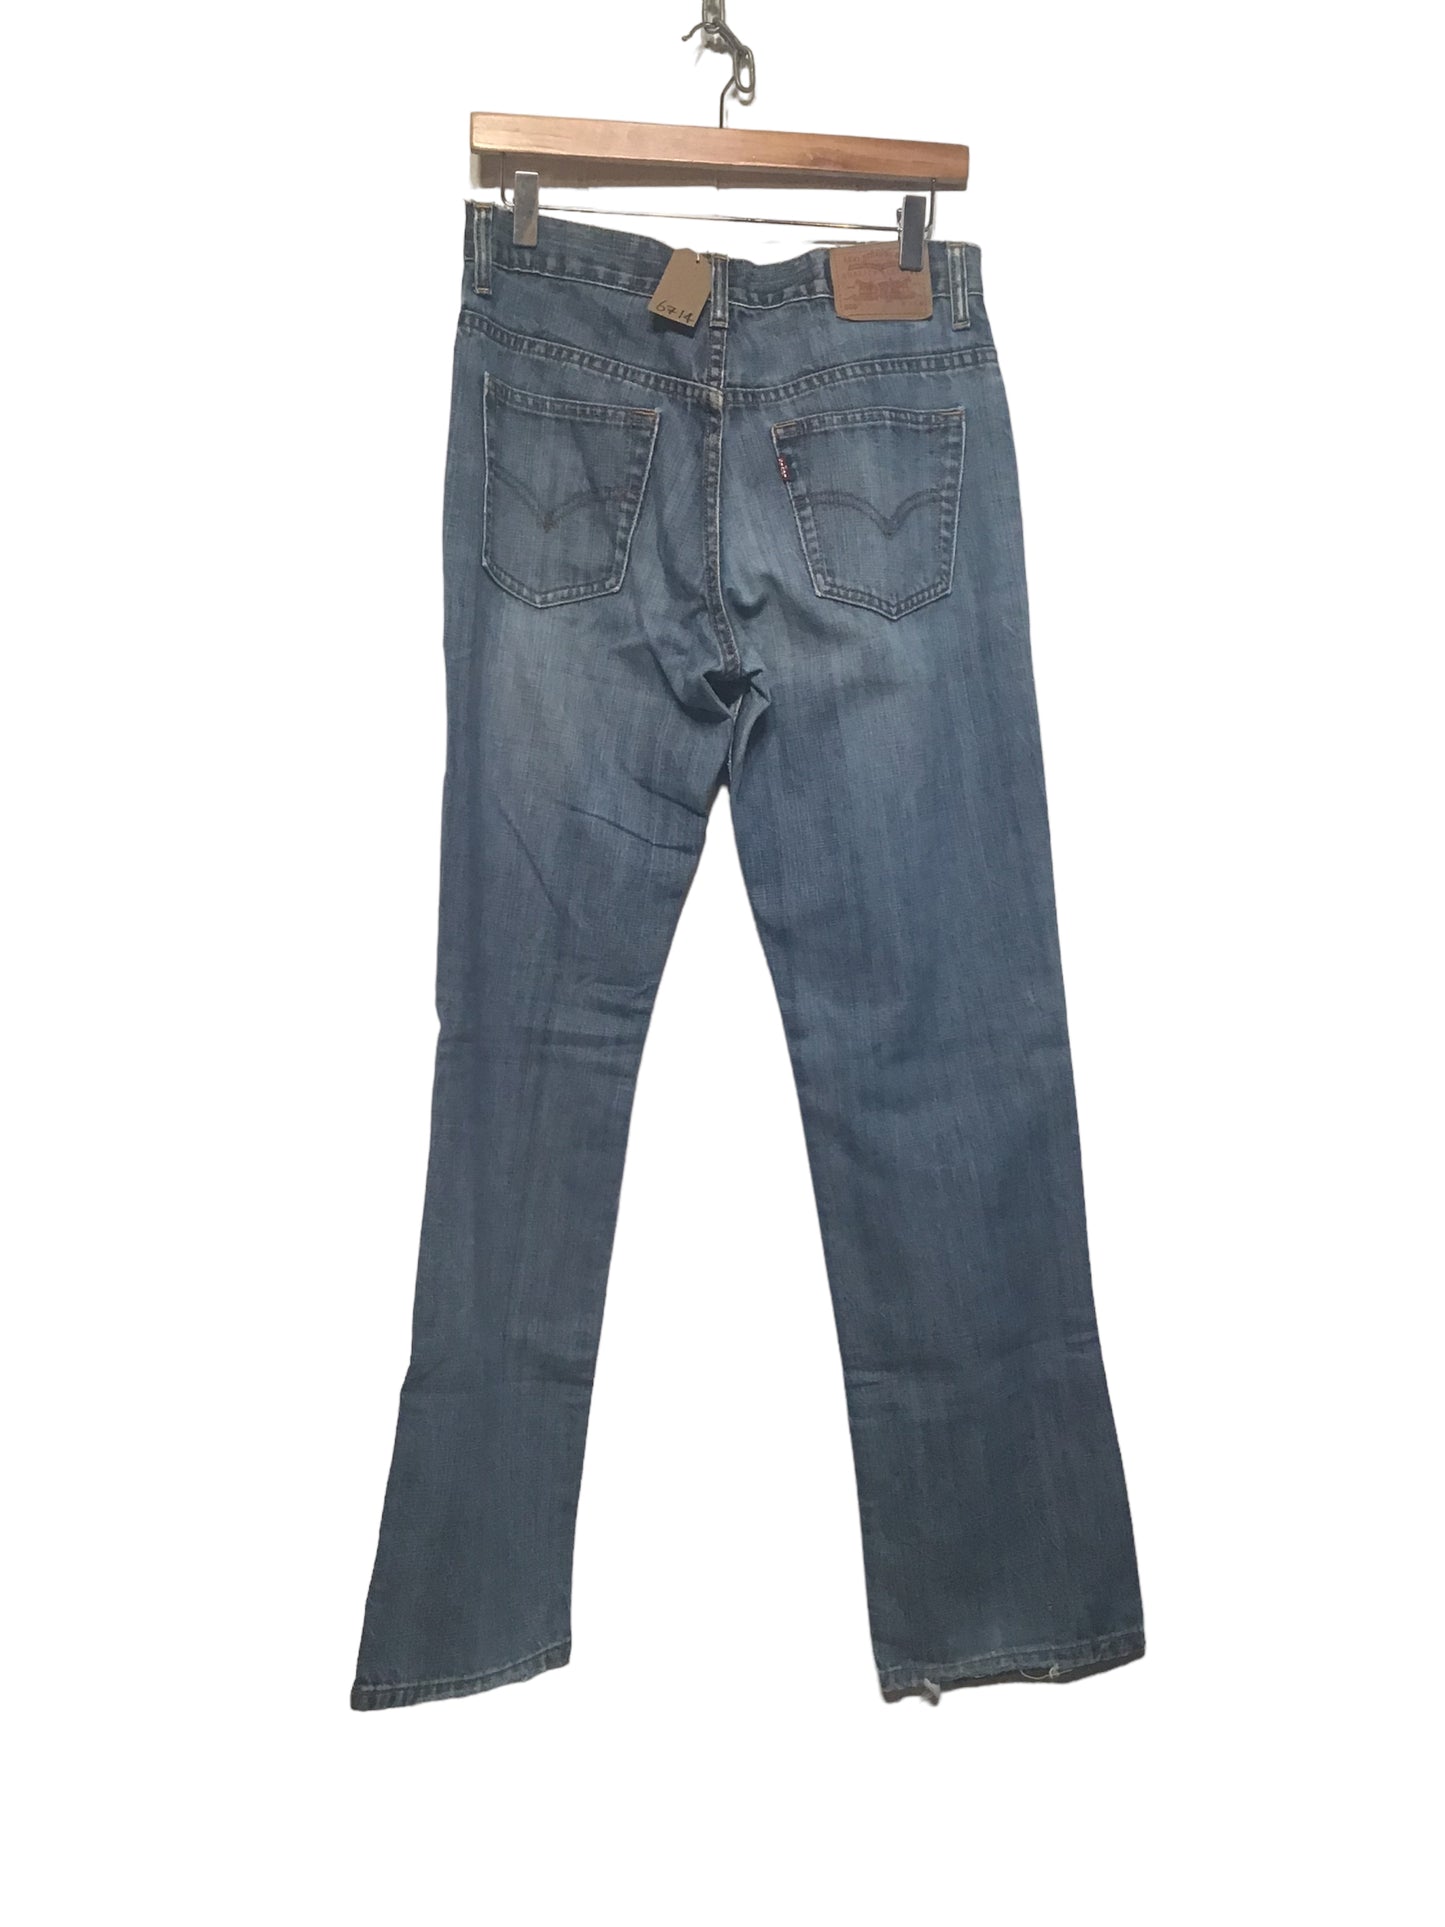 Levi 505 Jeans (32x32)